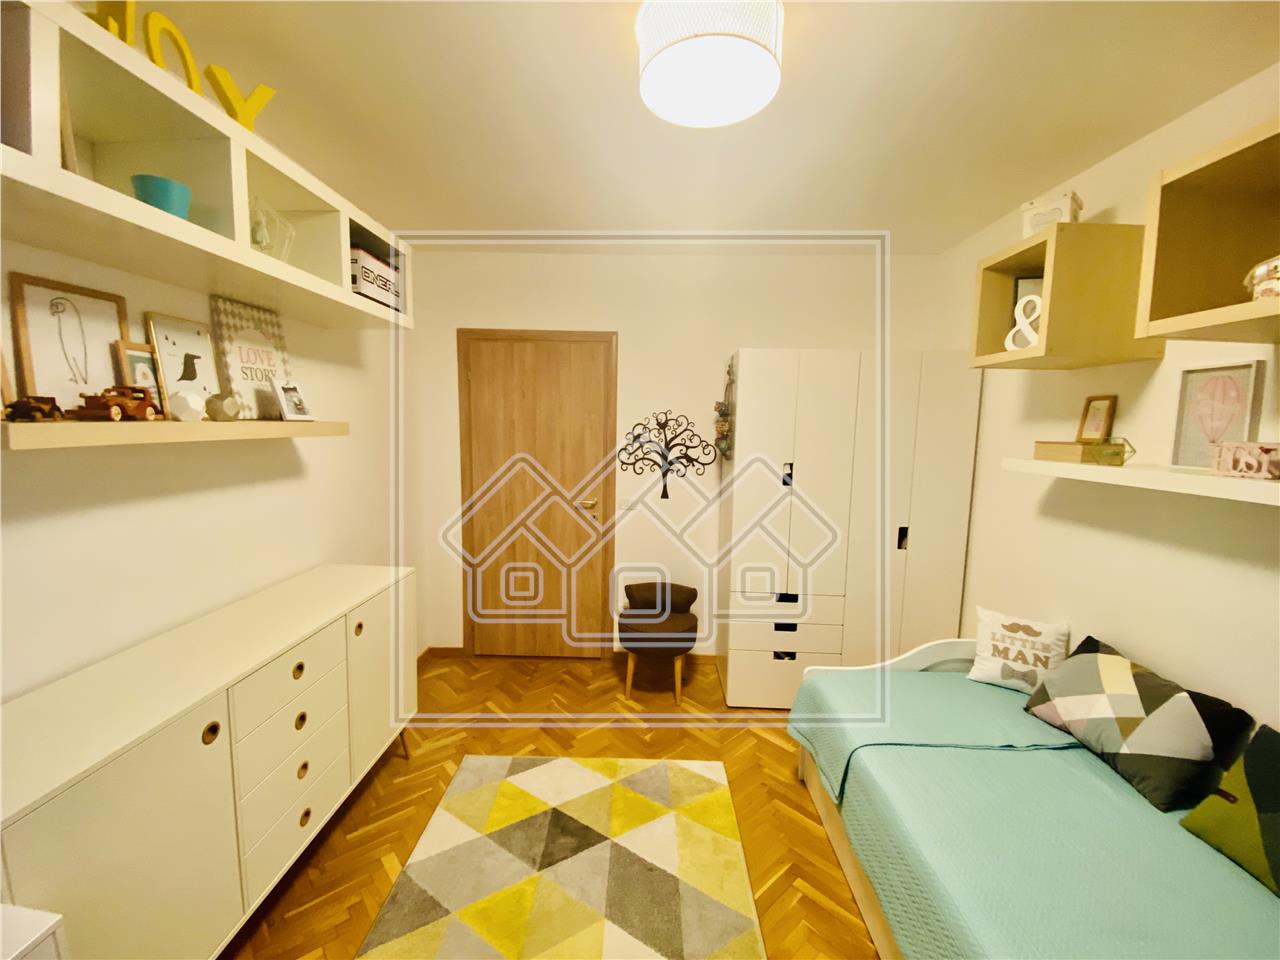 Wohnung zu verkaufen in Sibiu -3 Zimmer, modern eingerichtet und ausge